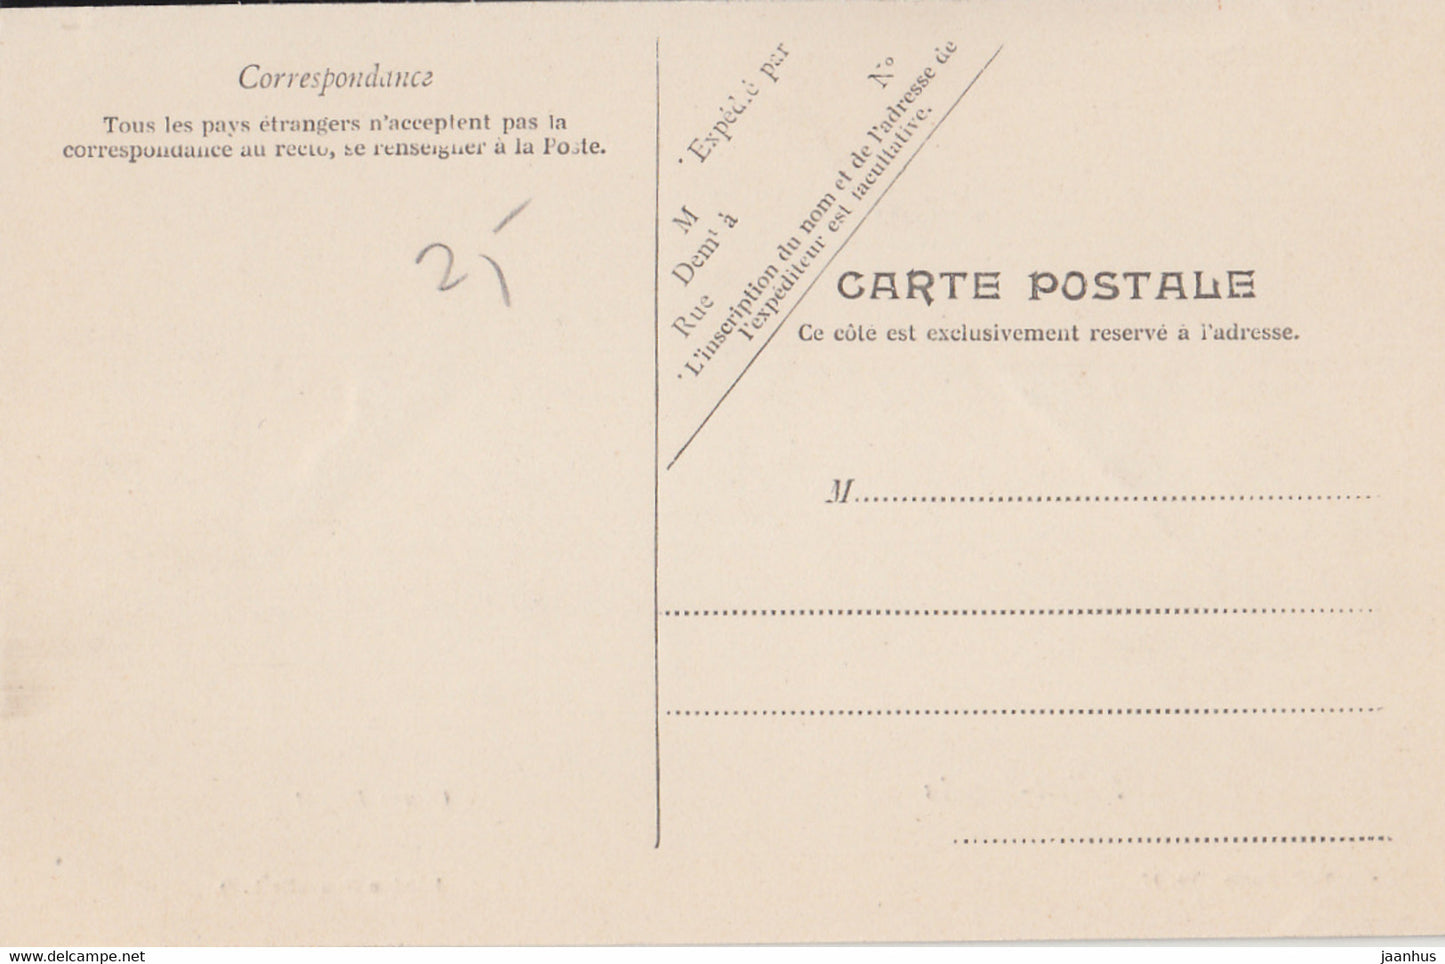 Saint Denis - Cours Ragot - tram - old postcard - France - unused